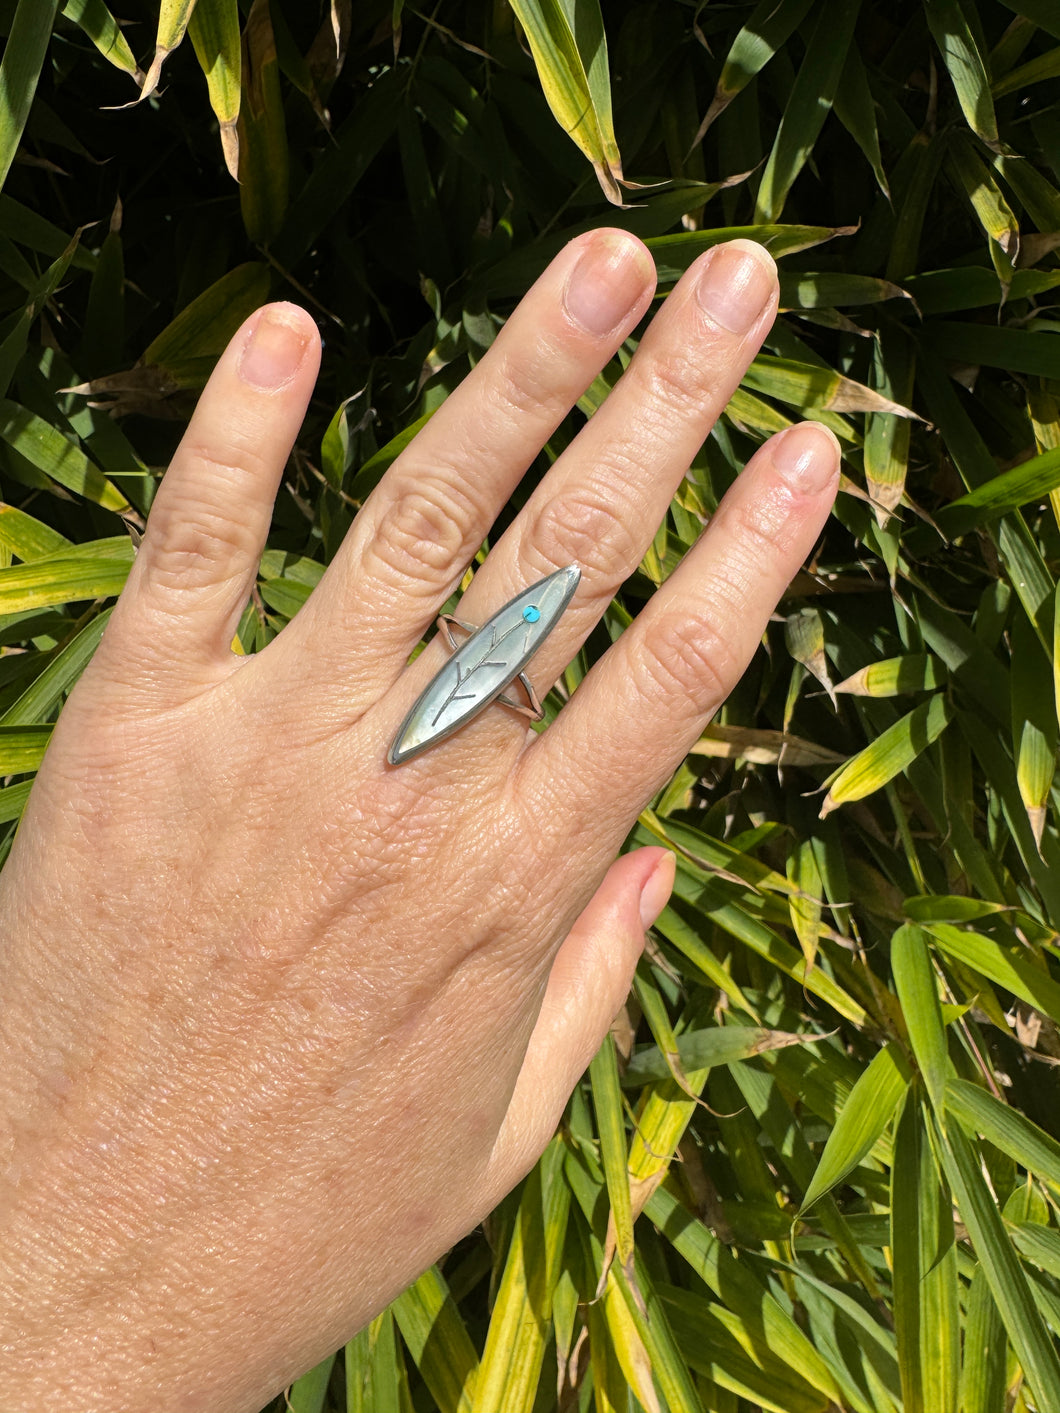 Zuni Flower Ring